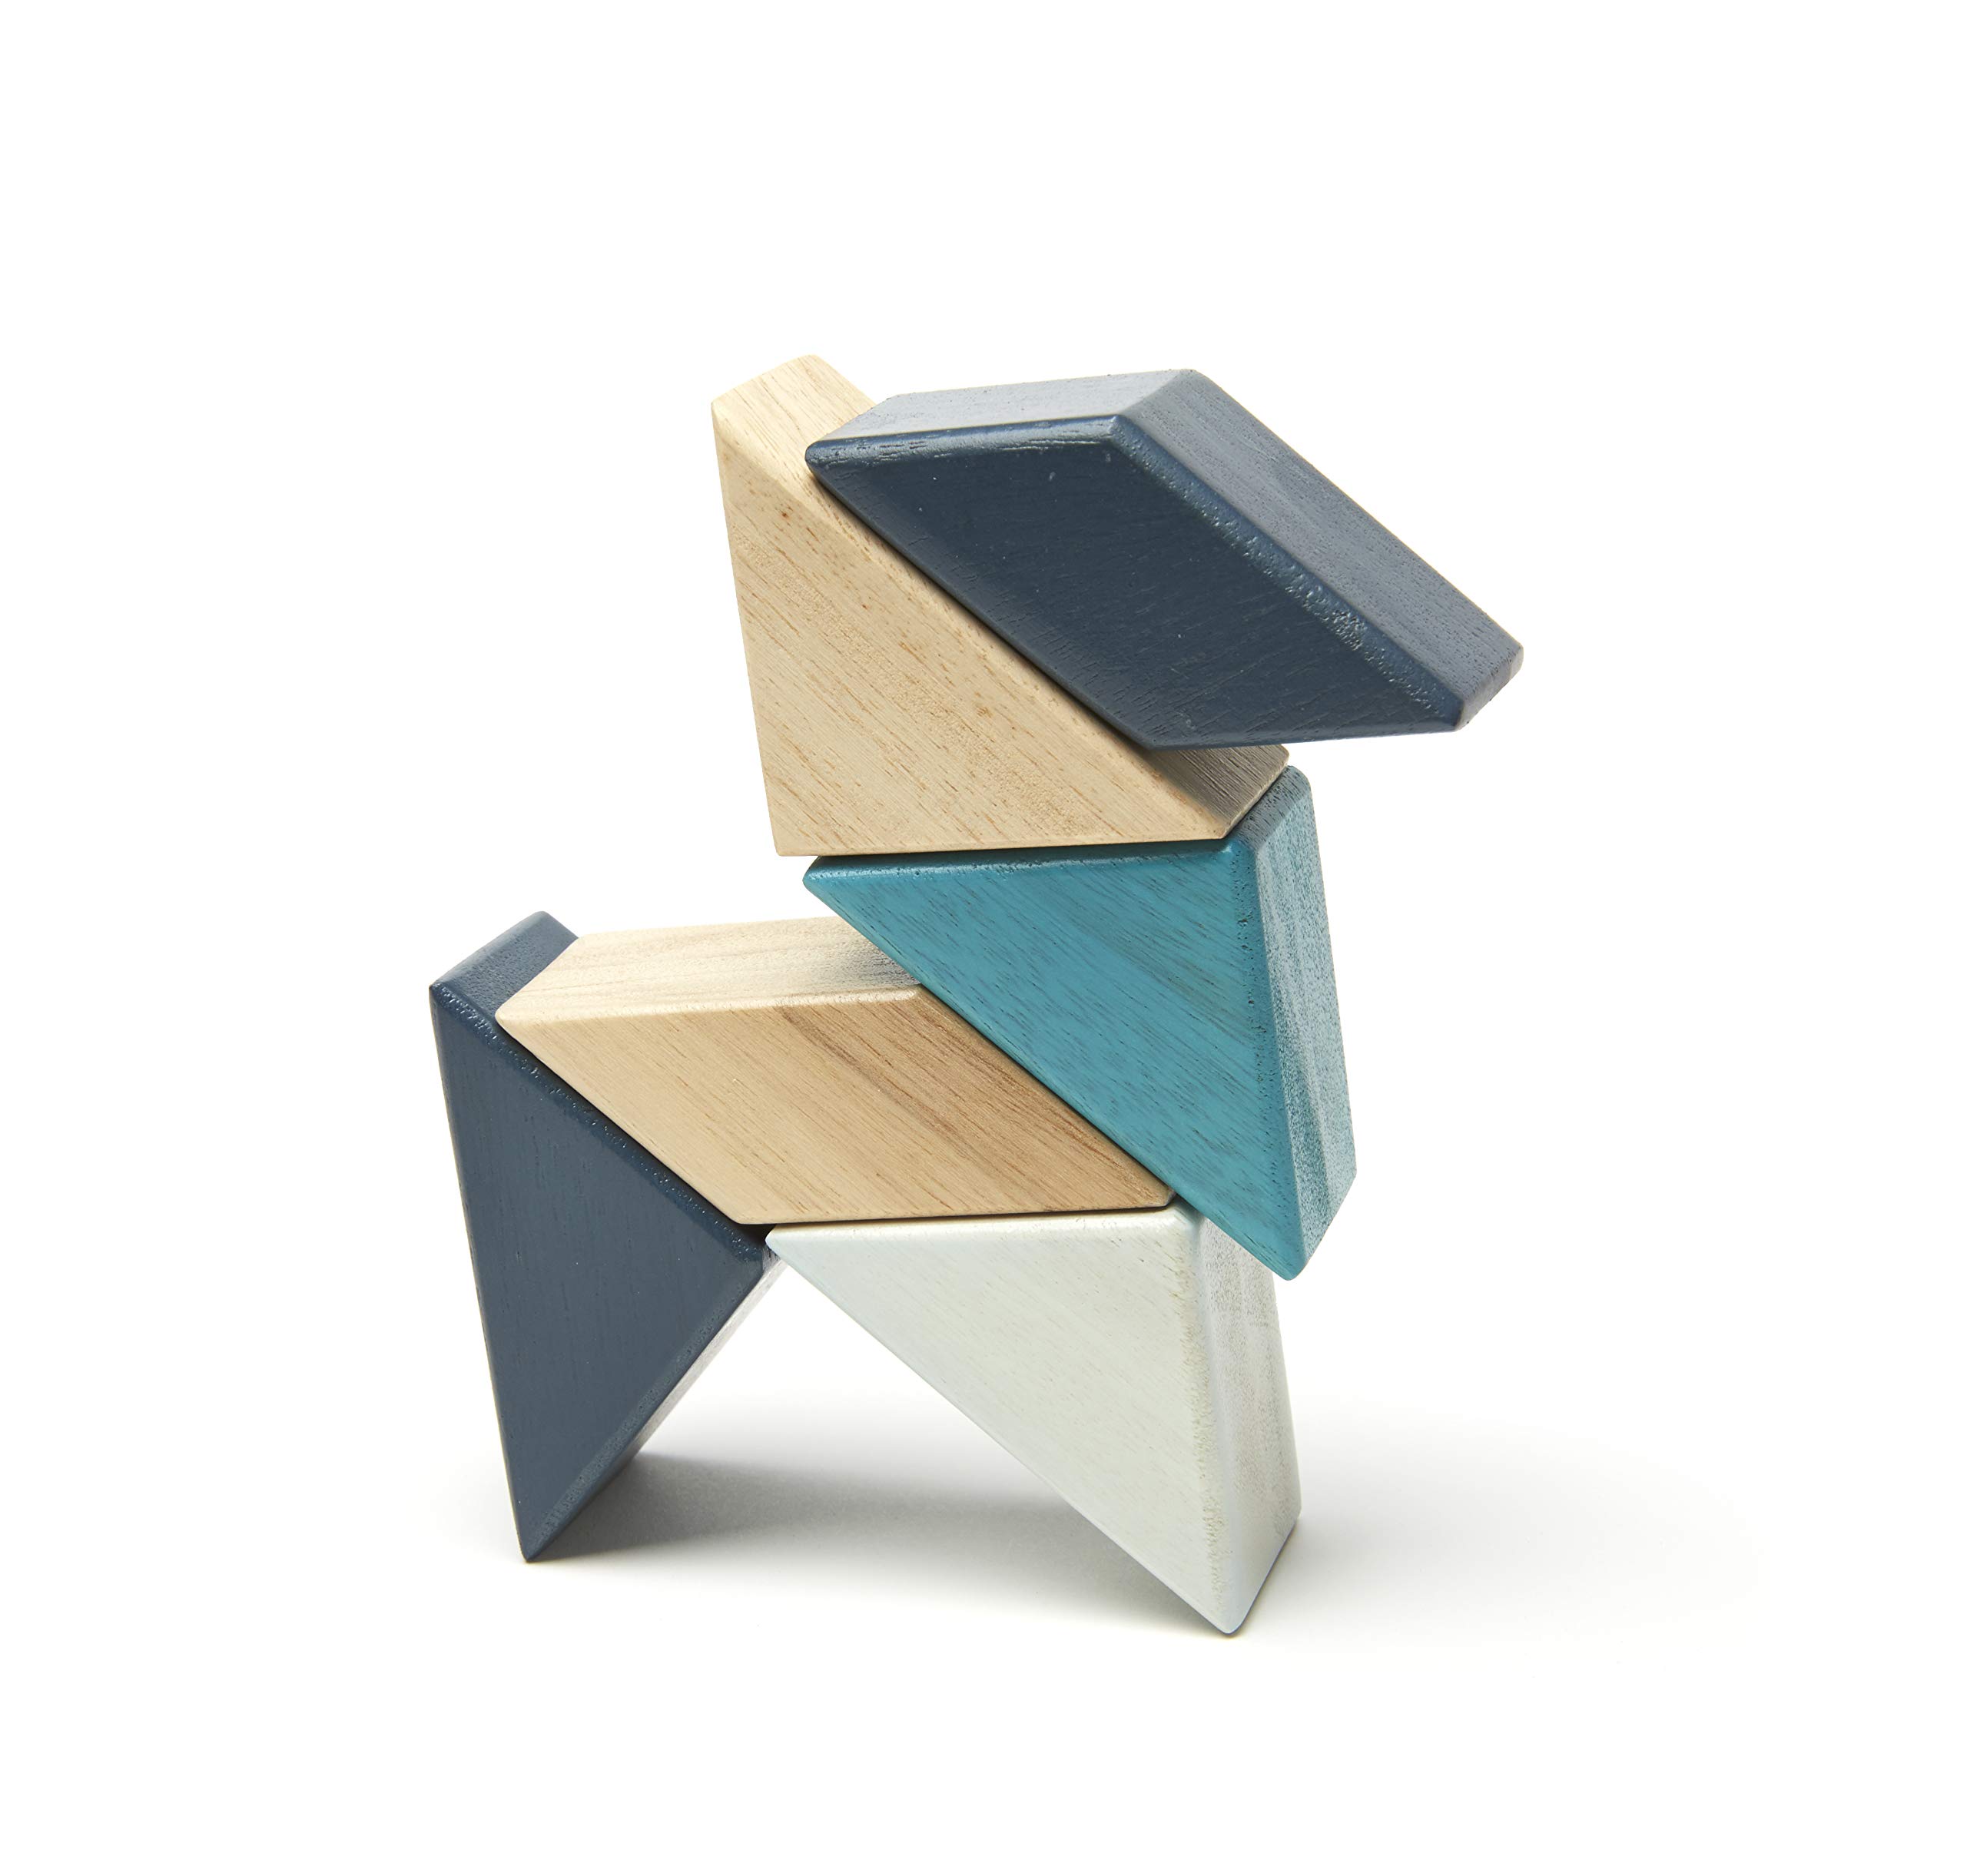 6 Piece Tegu Pocket Pouch Prism Magnetic Wooden Block Set, Blues